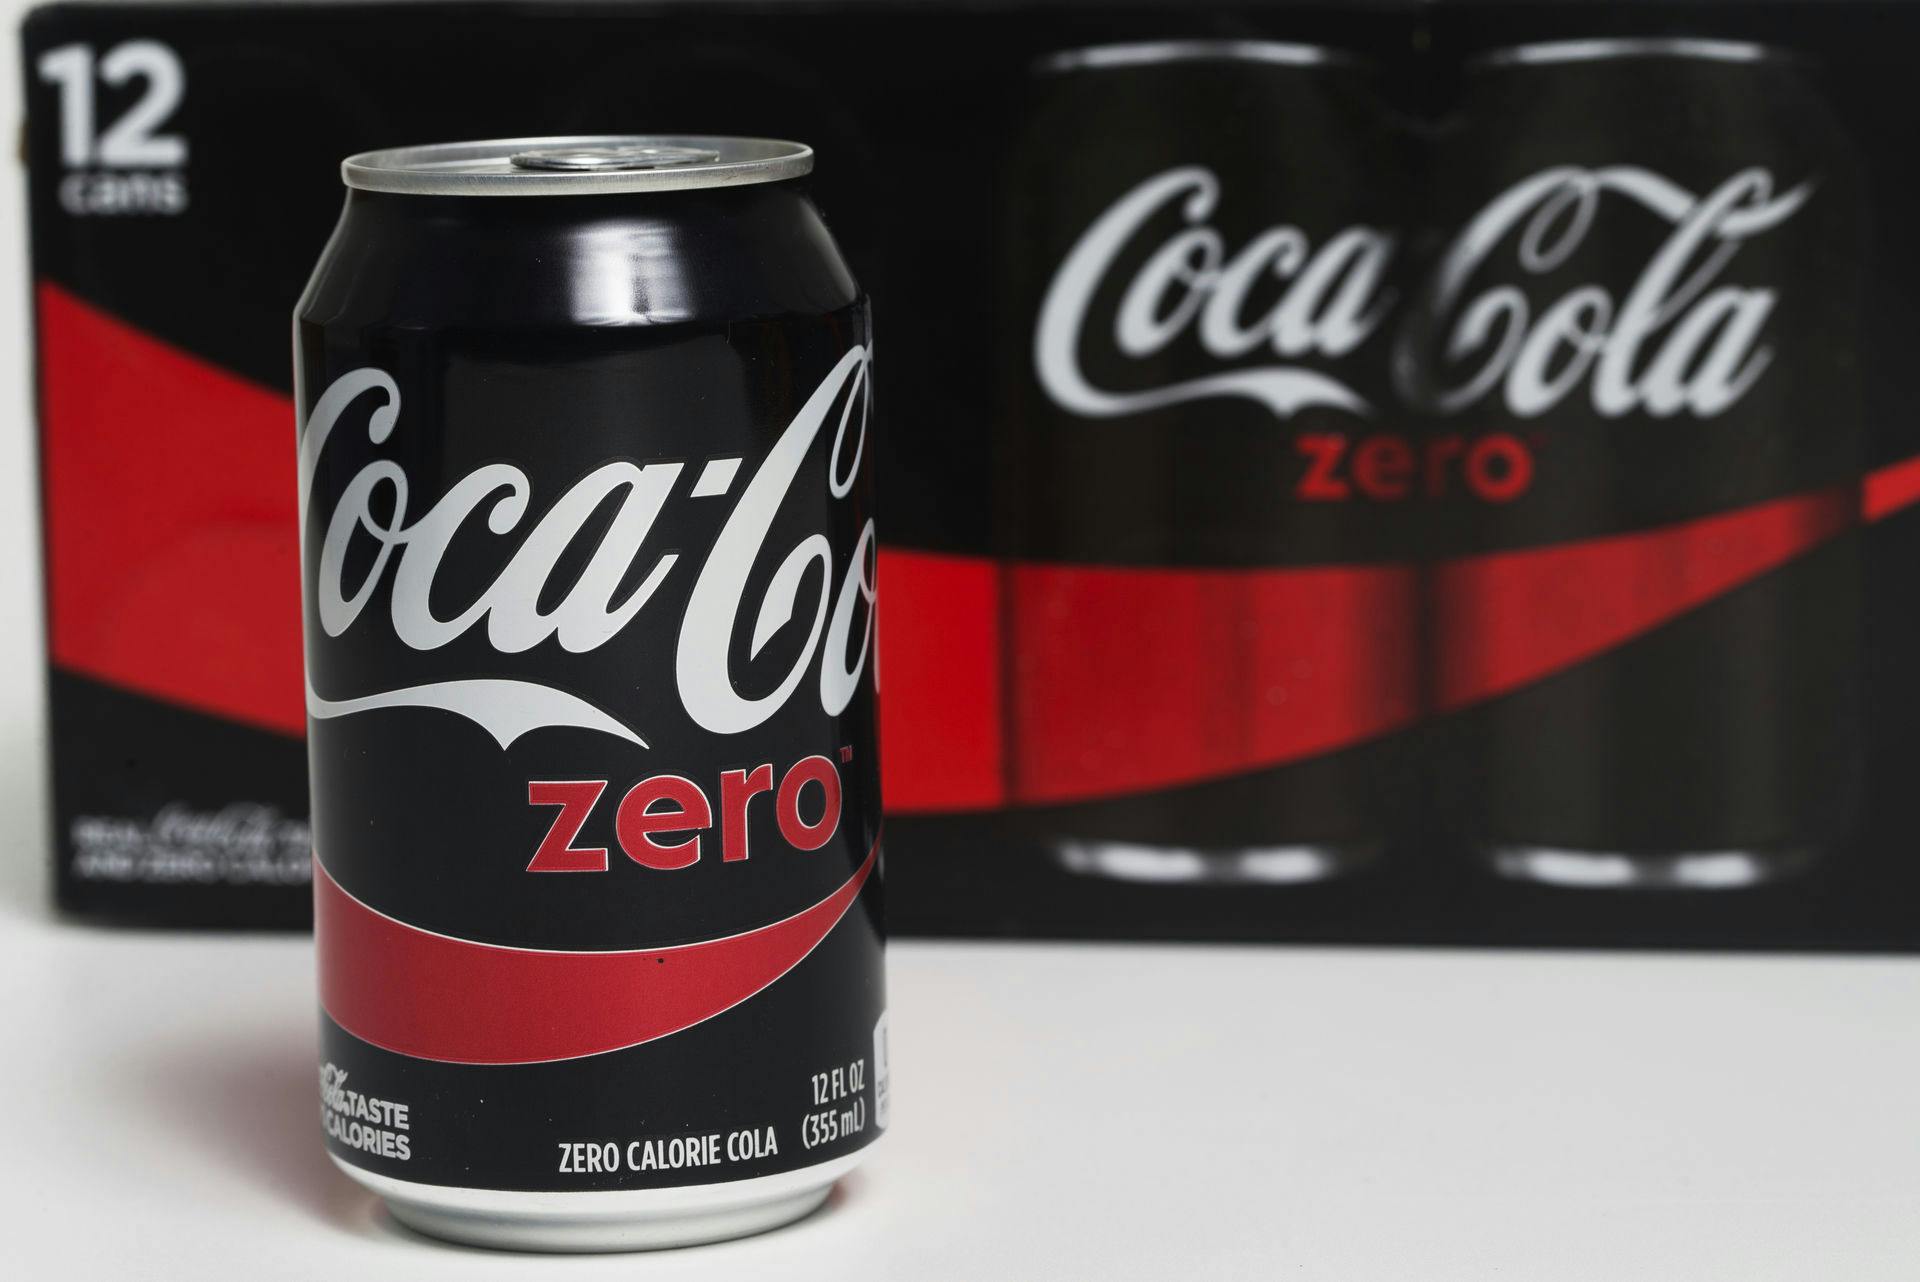 Mange af os har sikkert rakt ud efter Coca-Cola Zero i håbet om, at den var sundere for både talje og tænder end originalen.